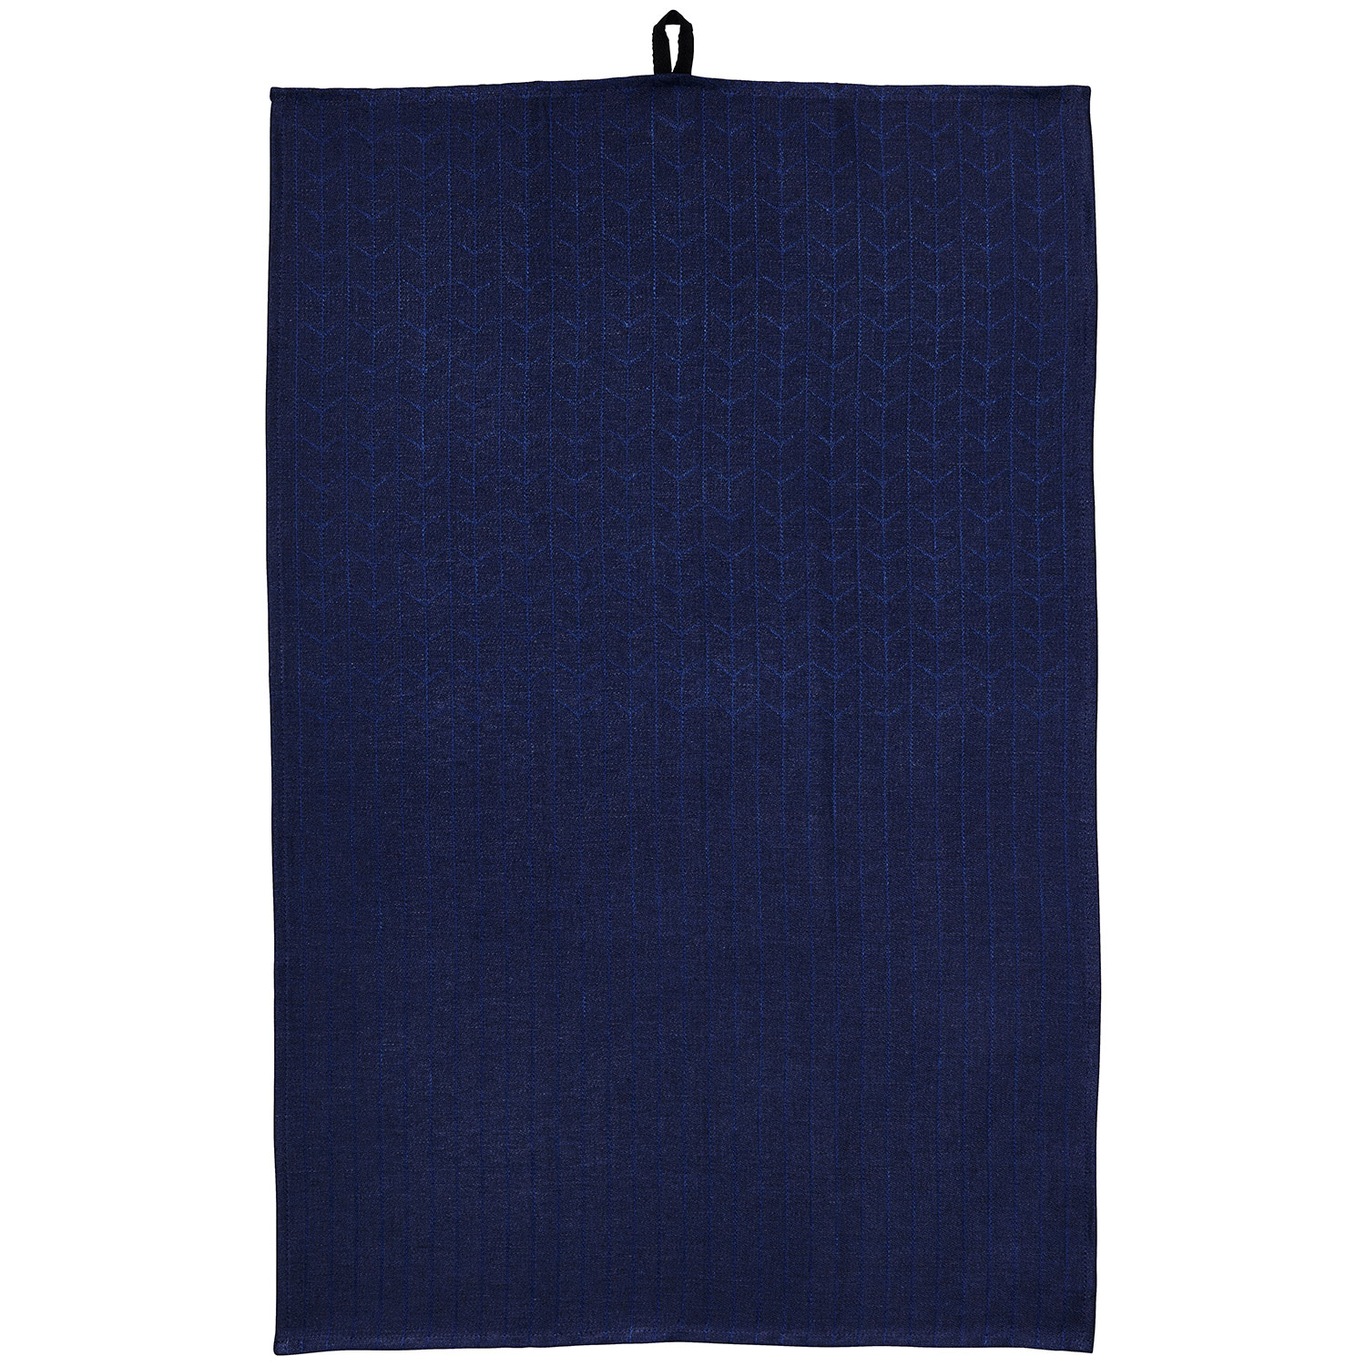 Swedish Grace Tea Towel 47x70 cm, Midnight (Dark Blue)